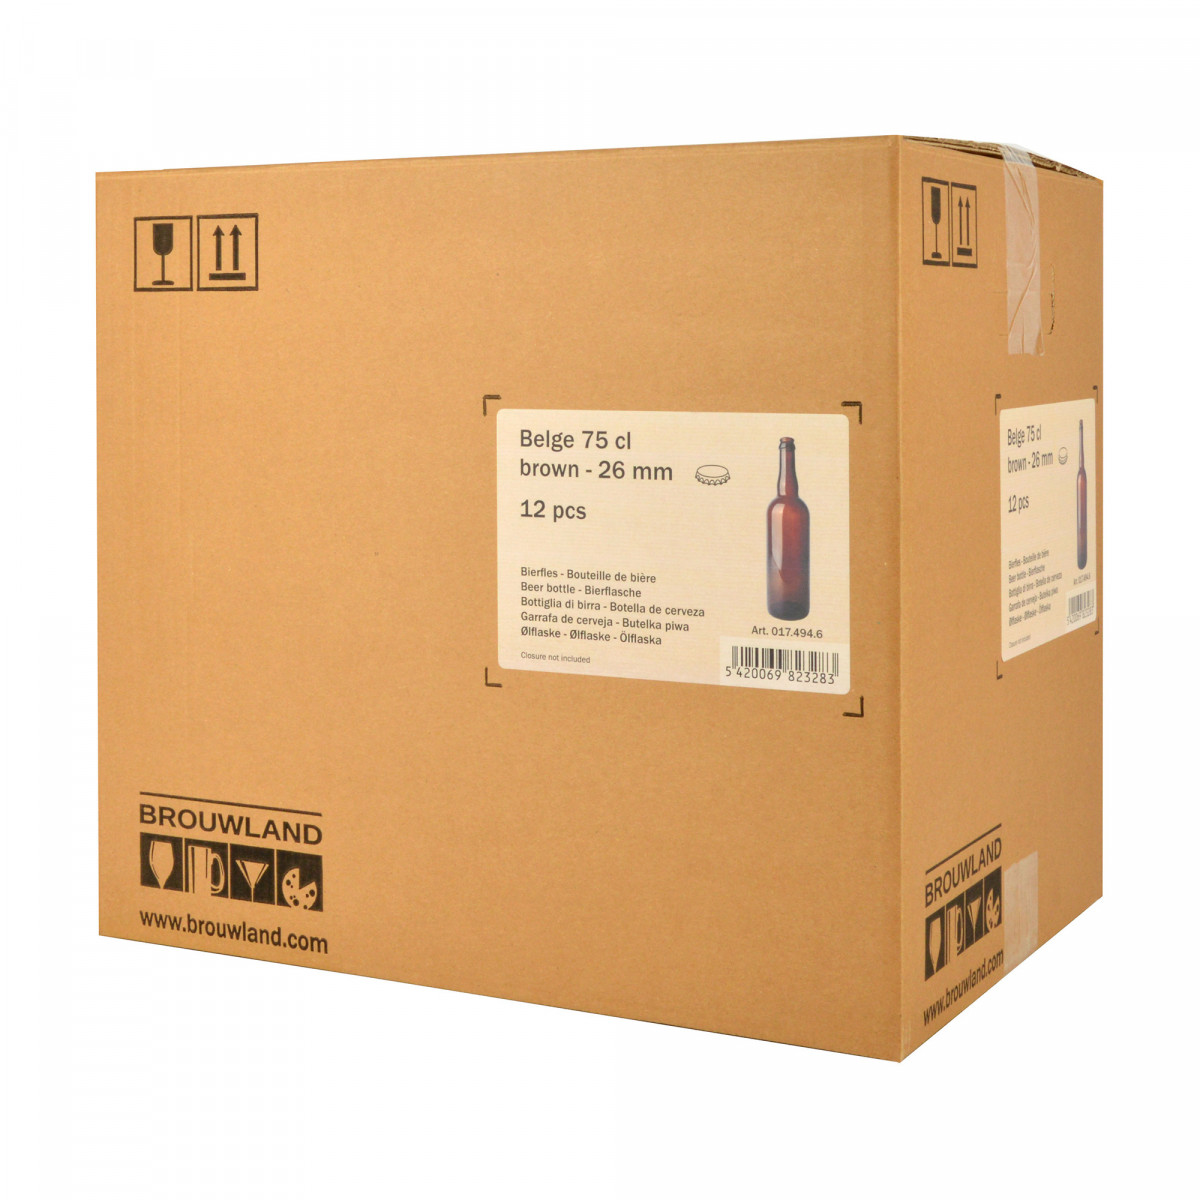 Beer bottle Belge 75 cl, brown, crown cork 26 mm, box 12 pcs